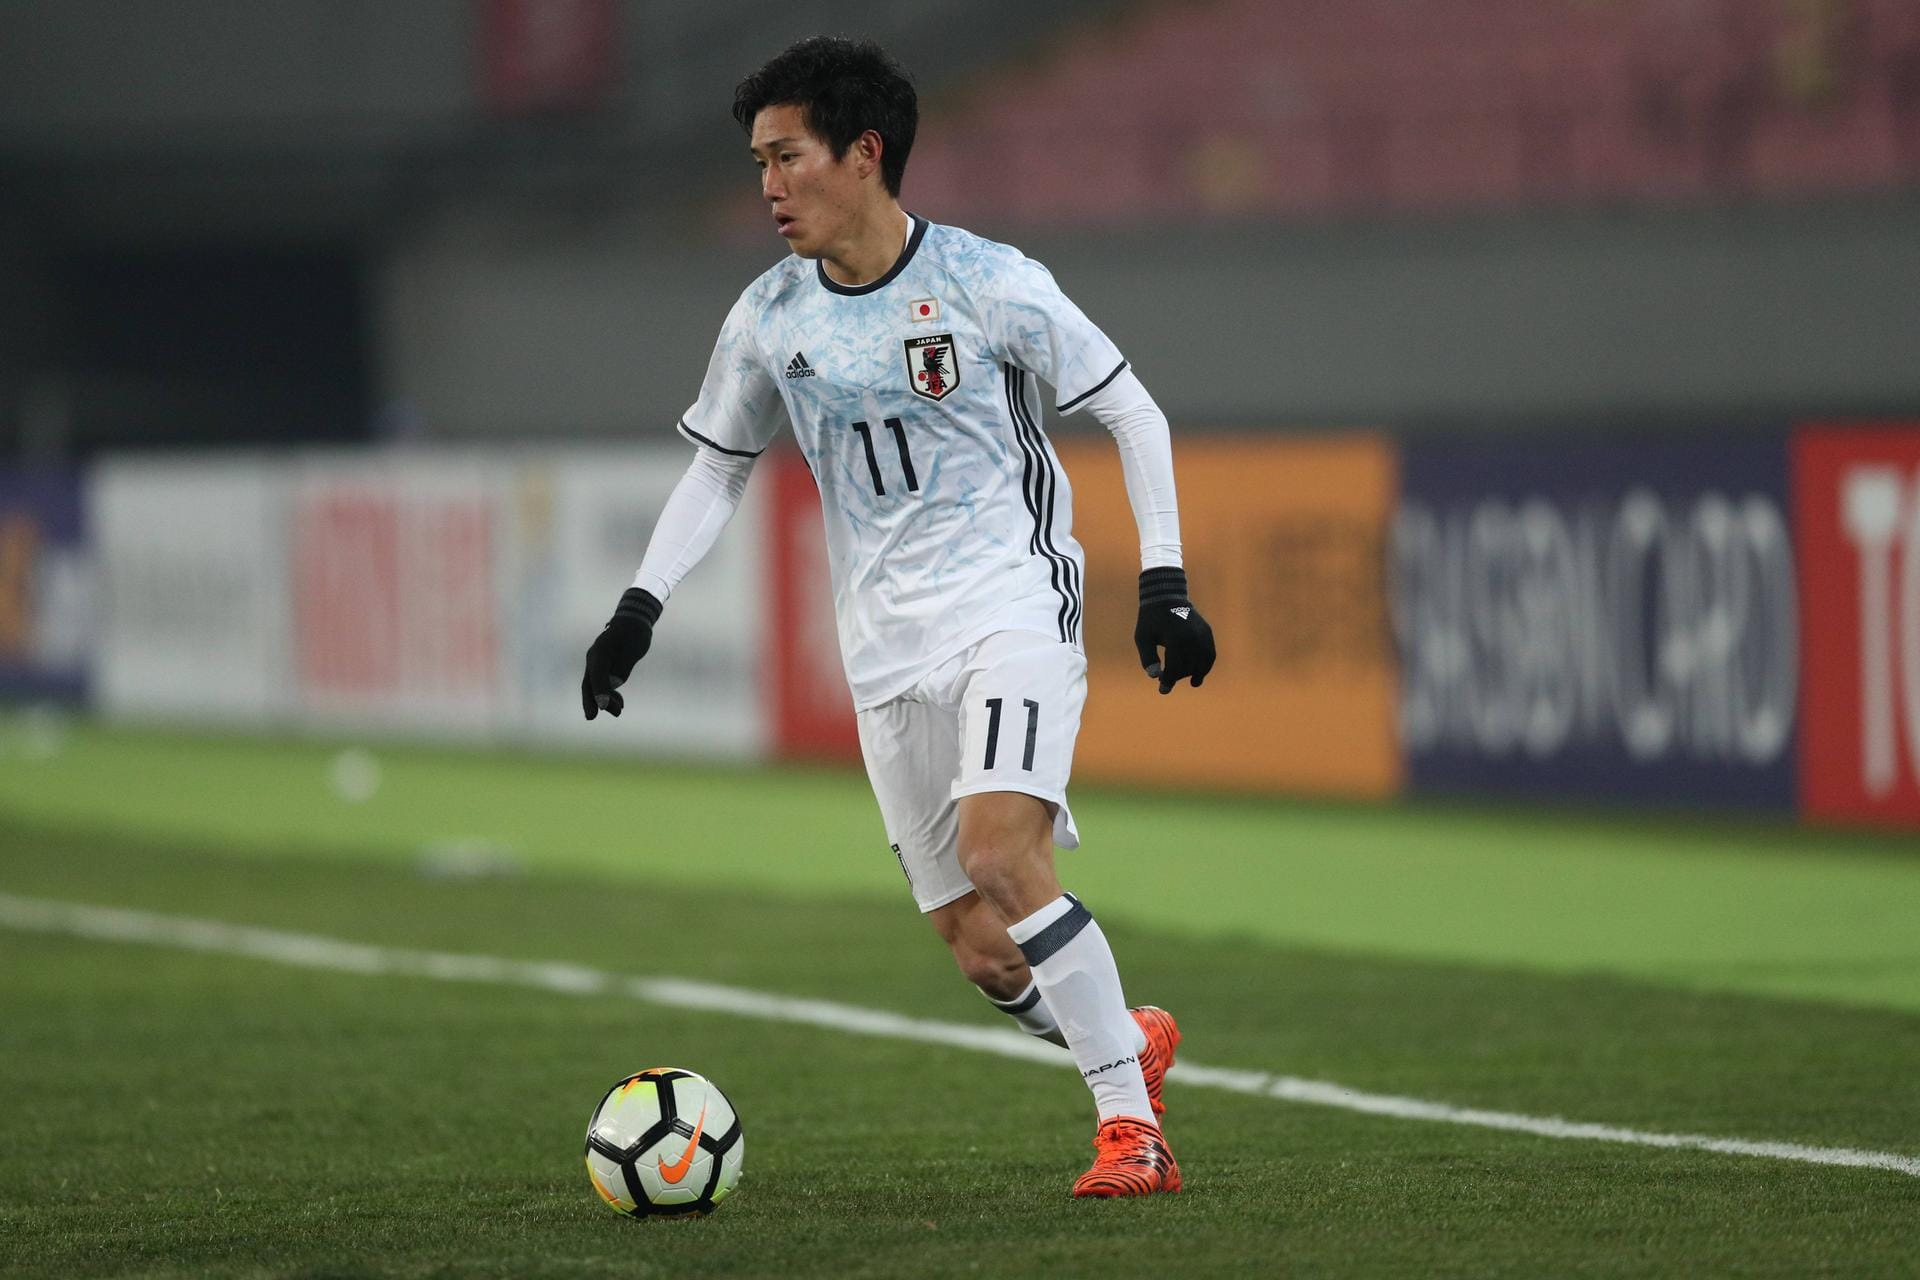 Von den Yokohama F. Marinos kommt der japanische Nationalspieler Keita Endo zu Union Berlin. Der 22-Jährige bleibt zunächst leihweise bis zum Ende der Saison 2020/2021. Die Köpenicker besitzen jedoch eine Kaufoption für den Linksaußen.